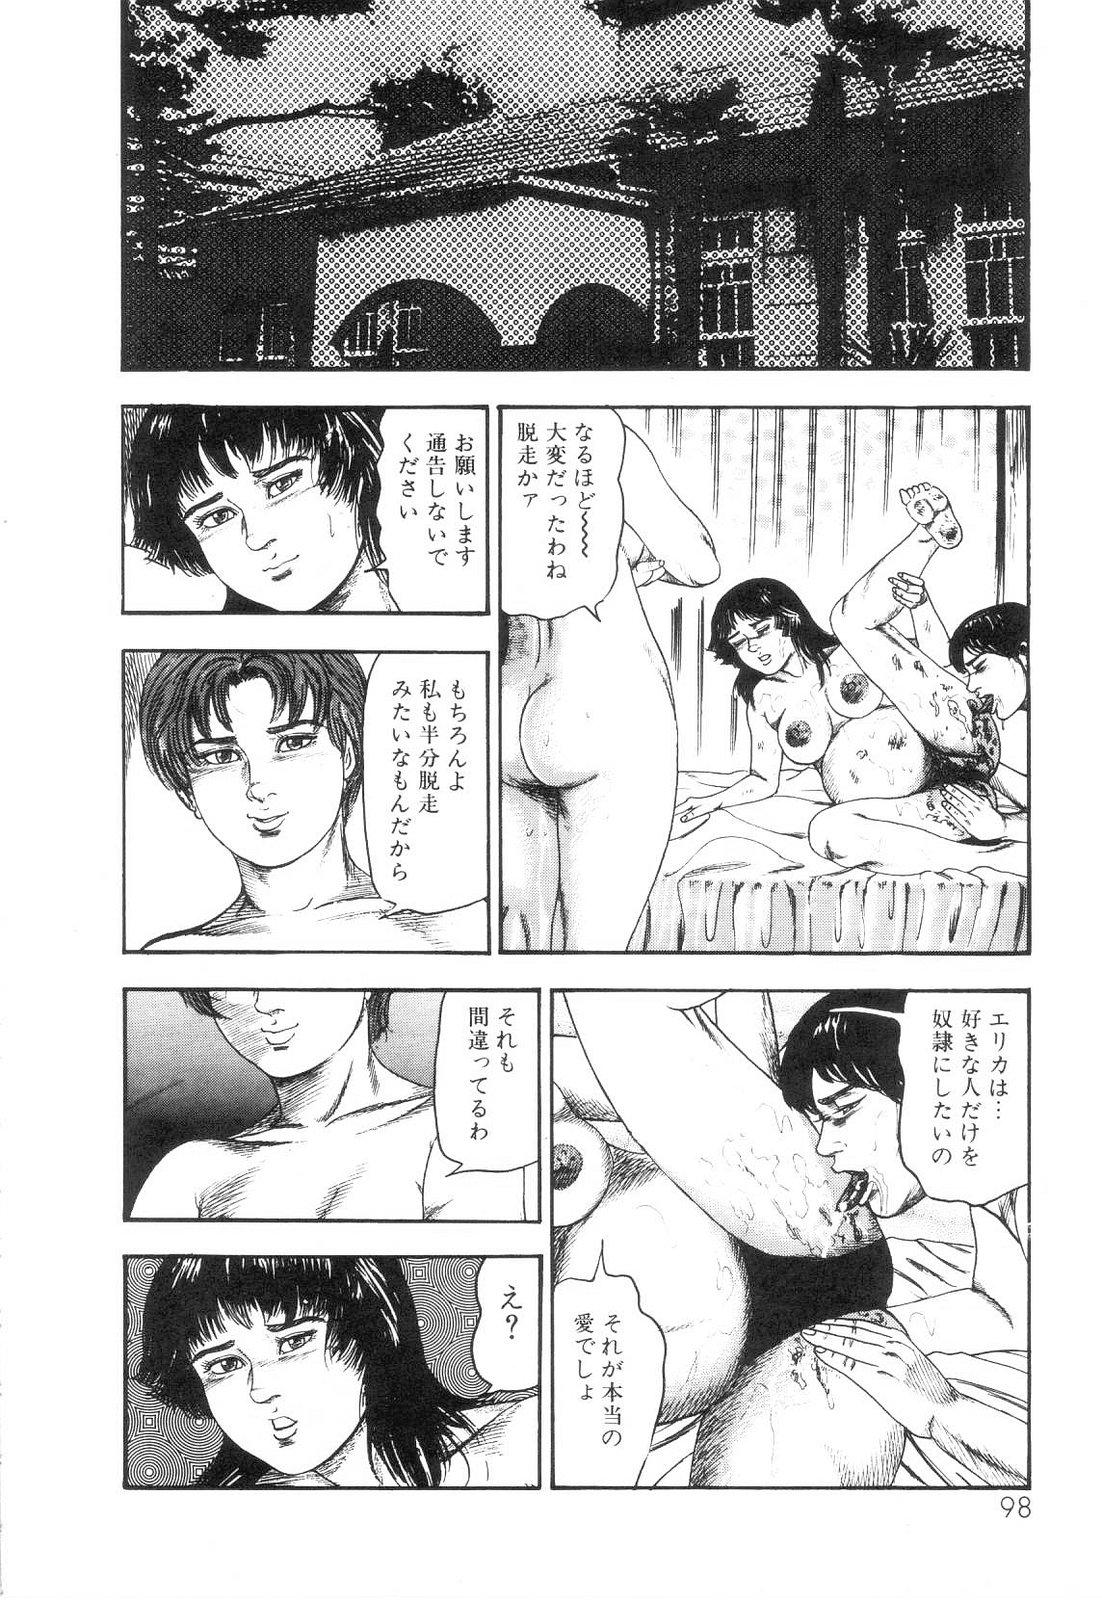 Shiro no Mokushiroku Vol. 6 - Juuai Erika no Shou 99